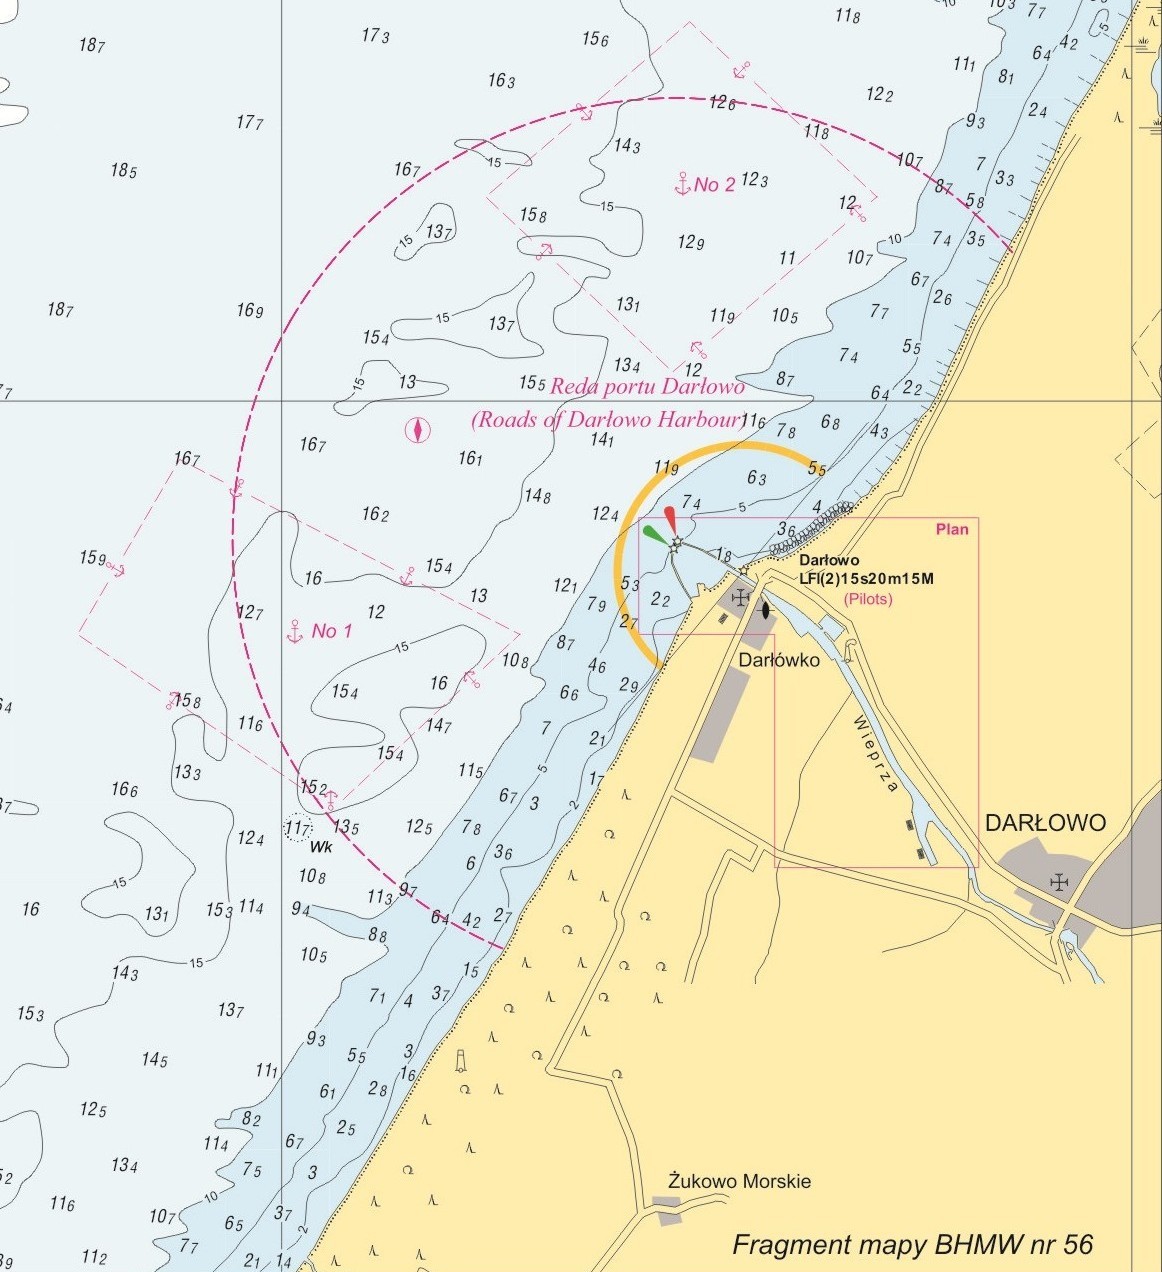 Podejście do Darłówka - mapa morska